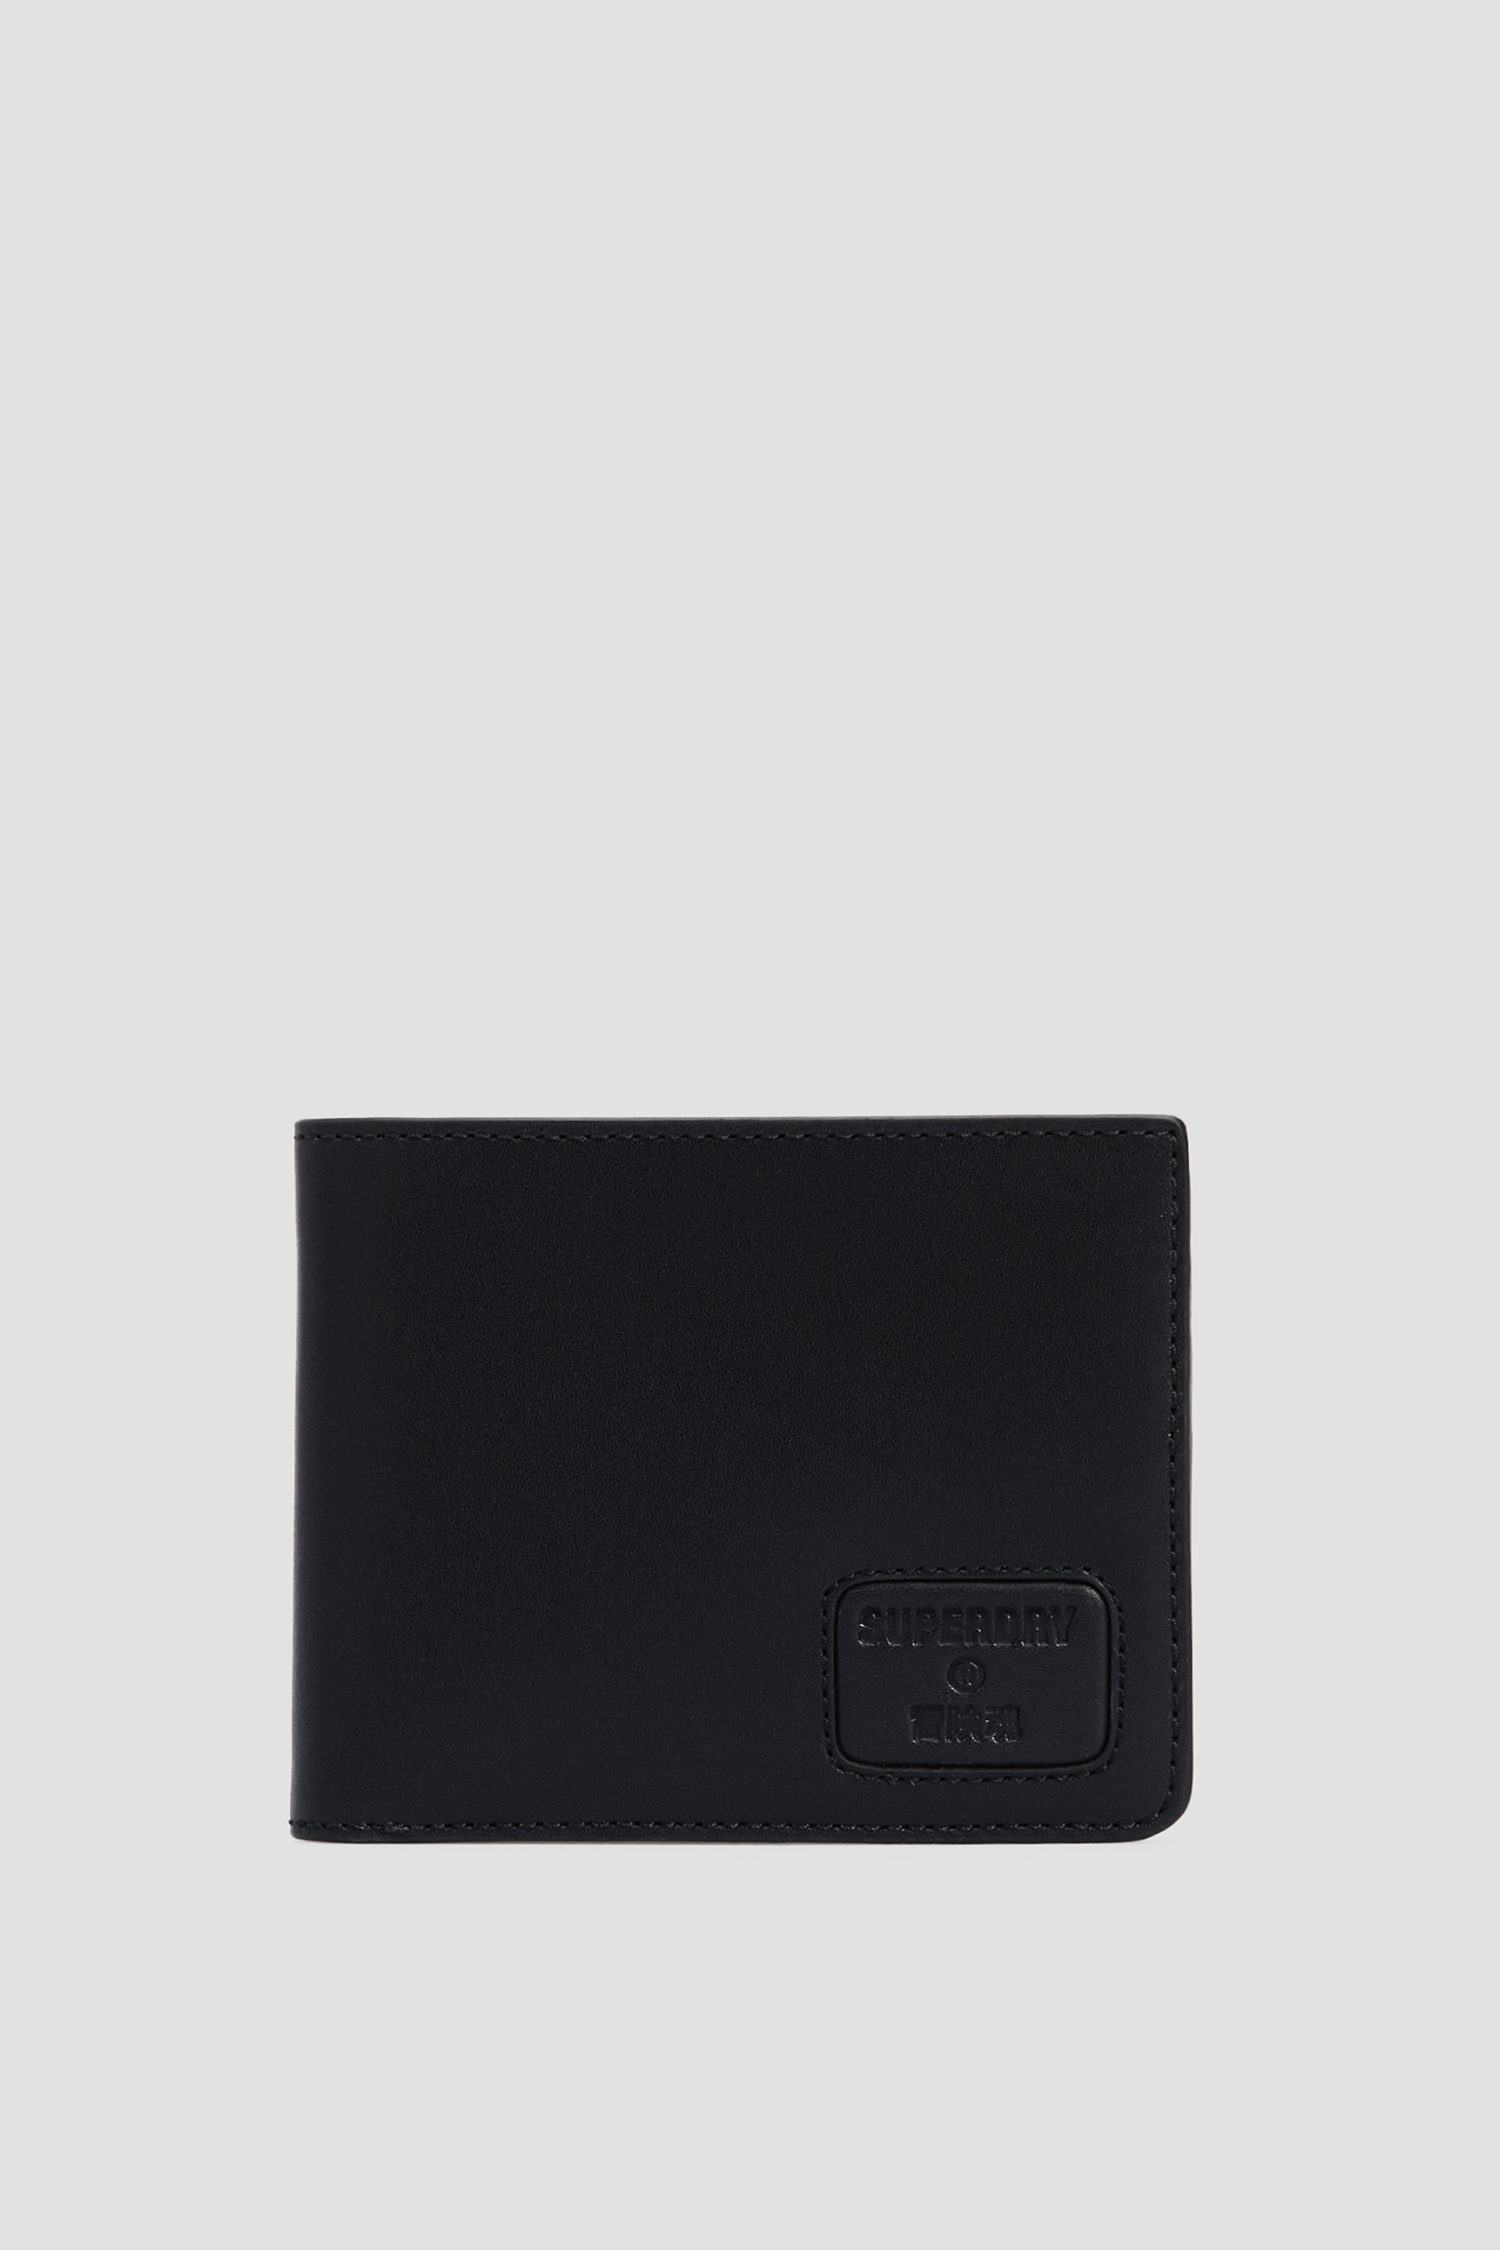 Черный кожаный кошелек для парней SuperDry M9810144A;02A